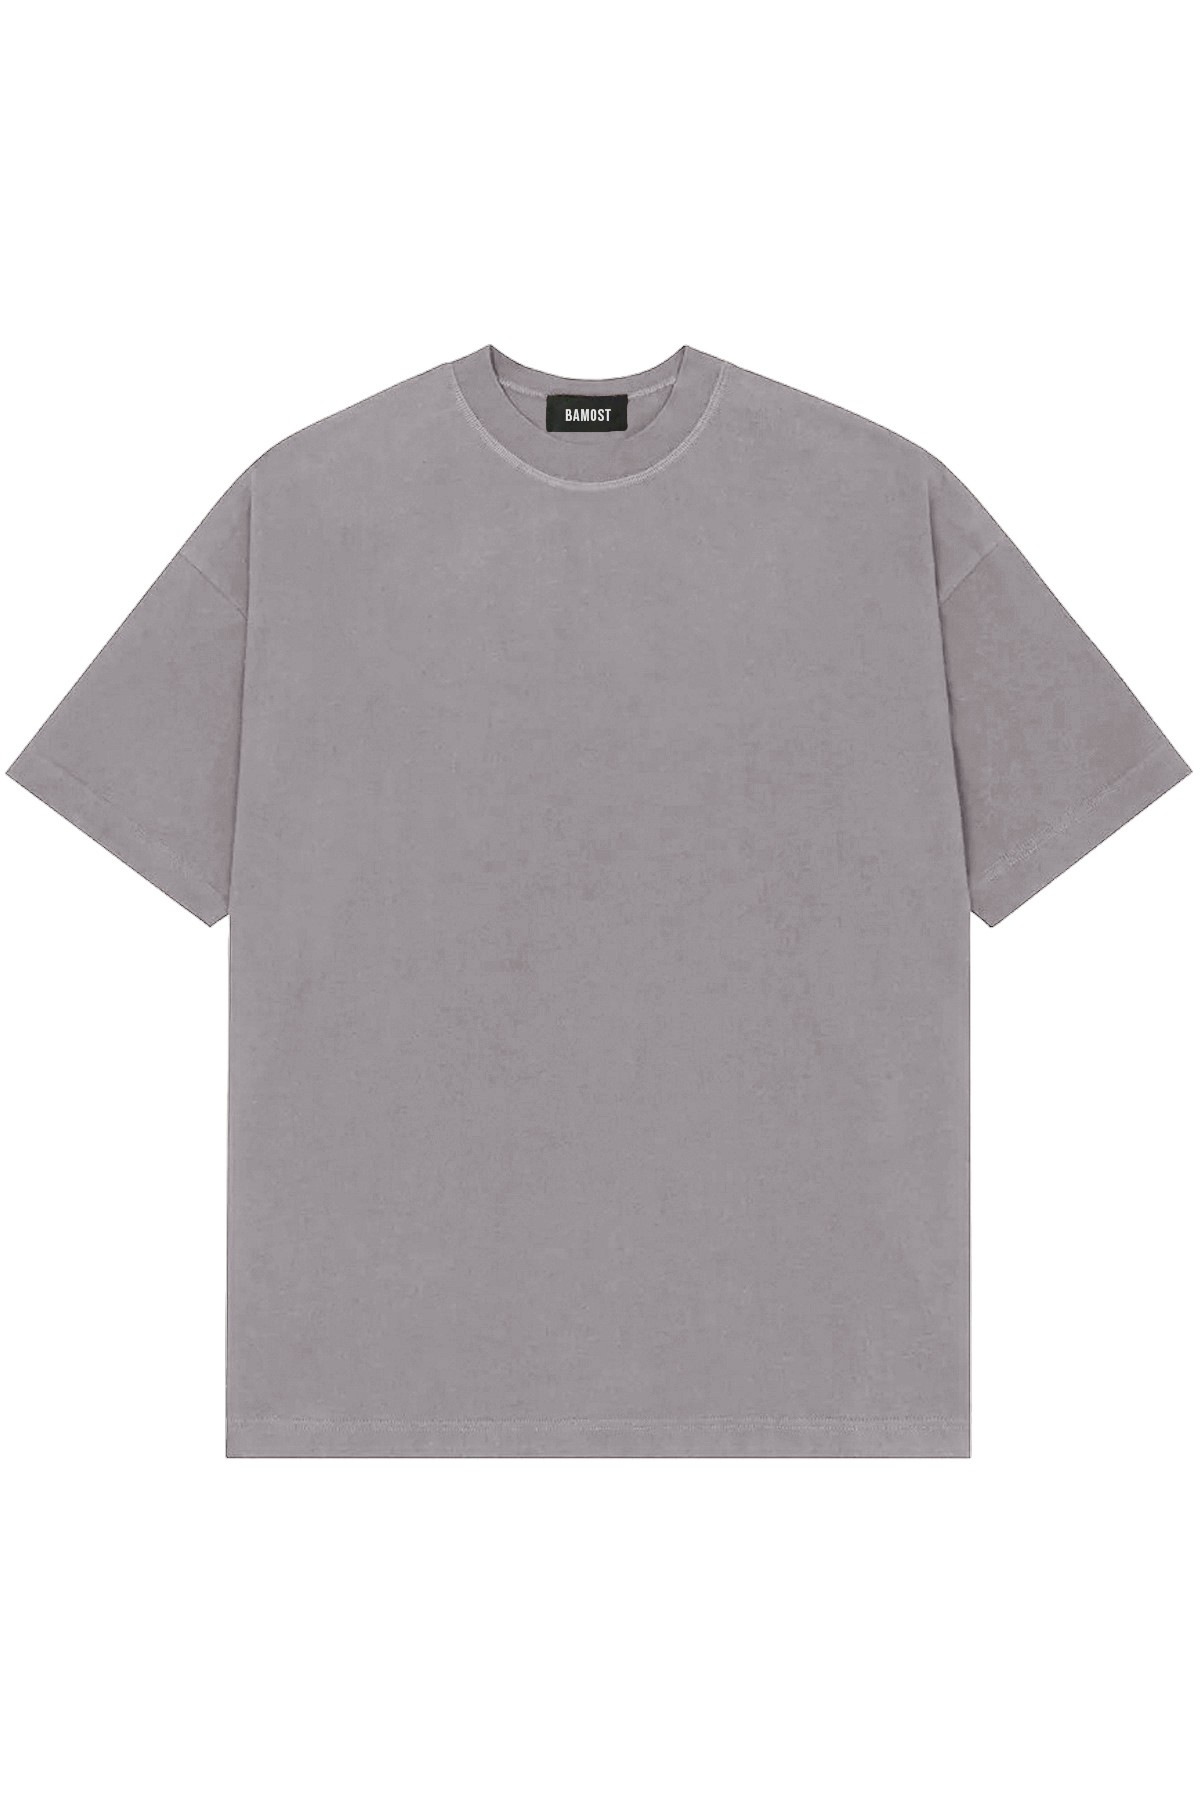 Boris - Comfort Basic T-Shirt - GREY